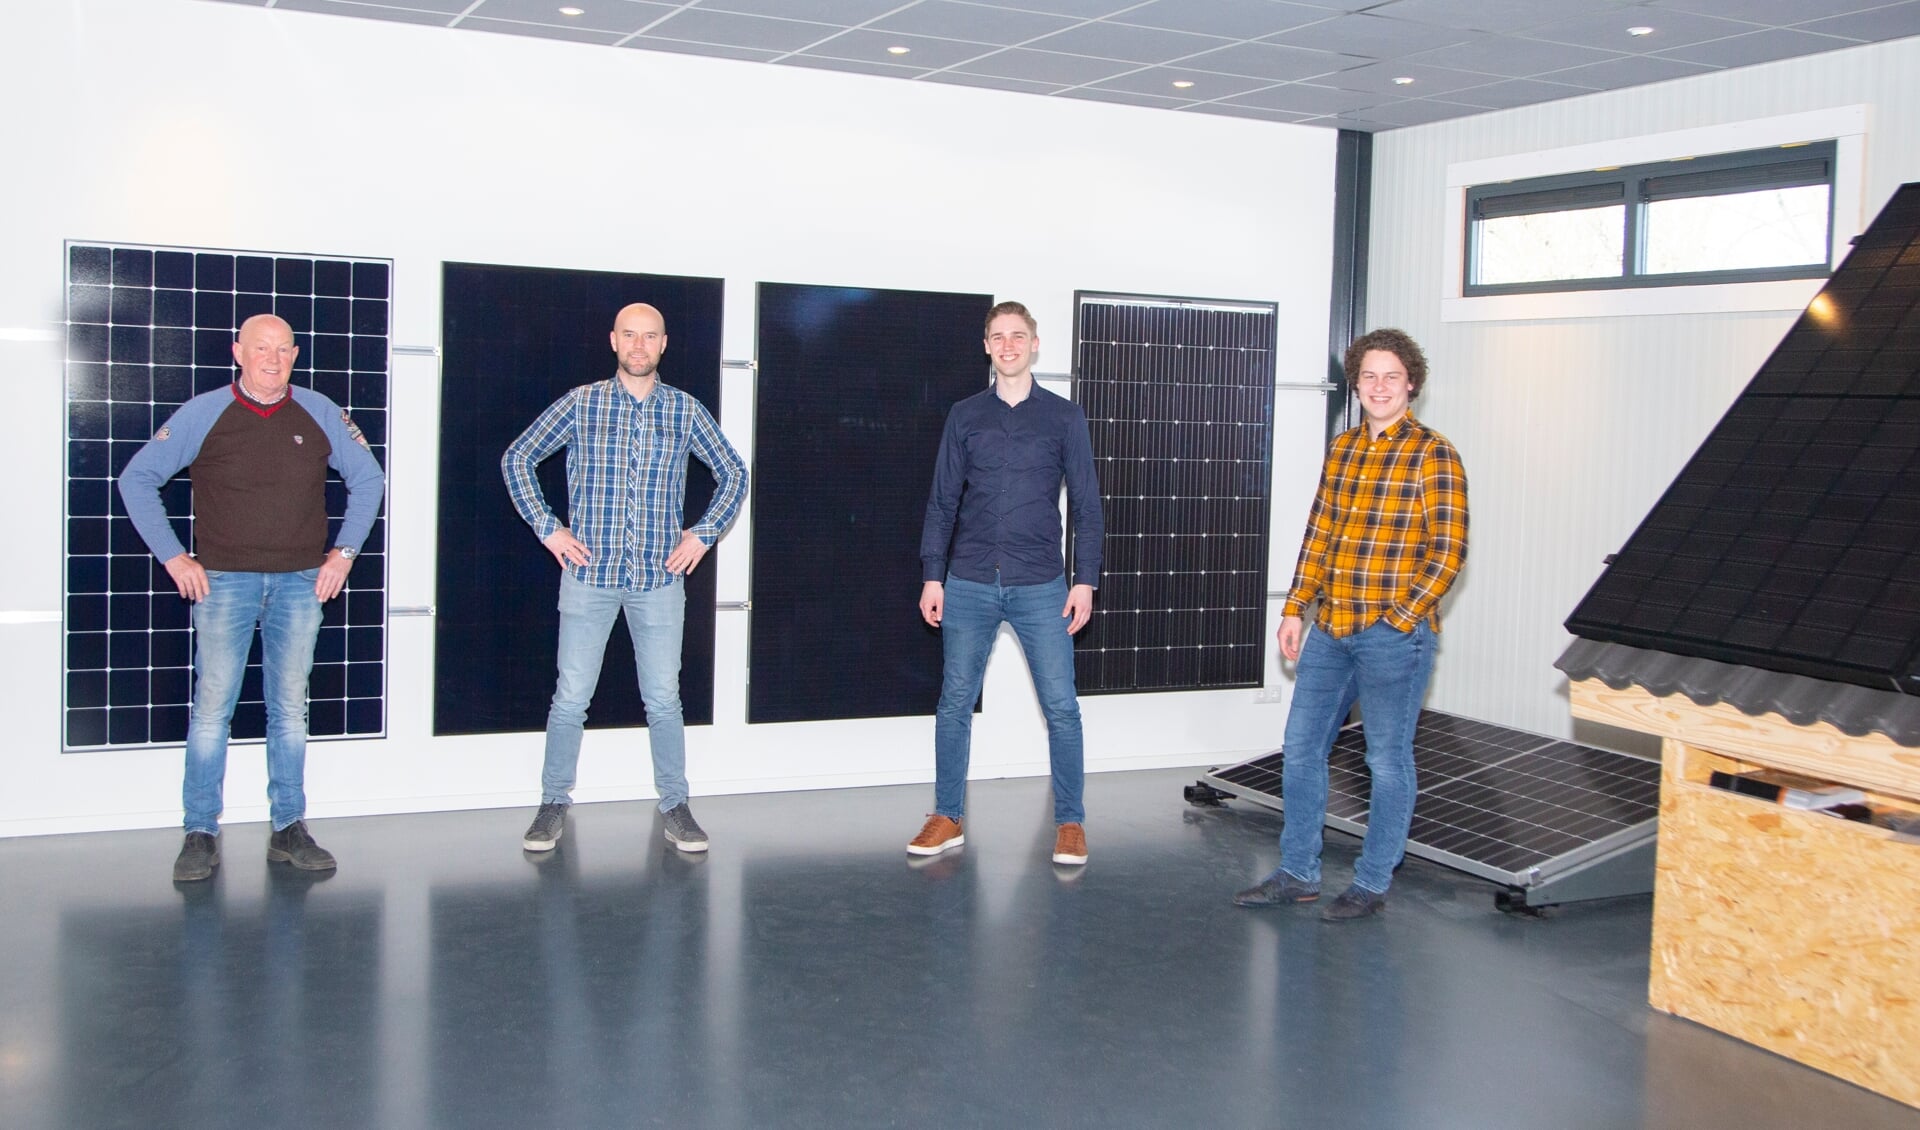 De nieuwe generatie zonnepanelen in de showroom van Ecolibrium. Tweede van links is Dennis van Diepen.